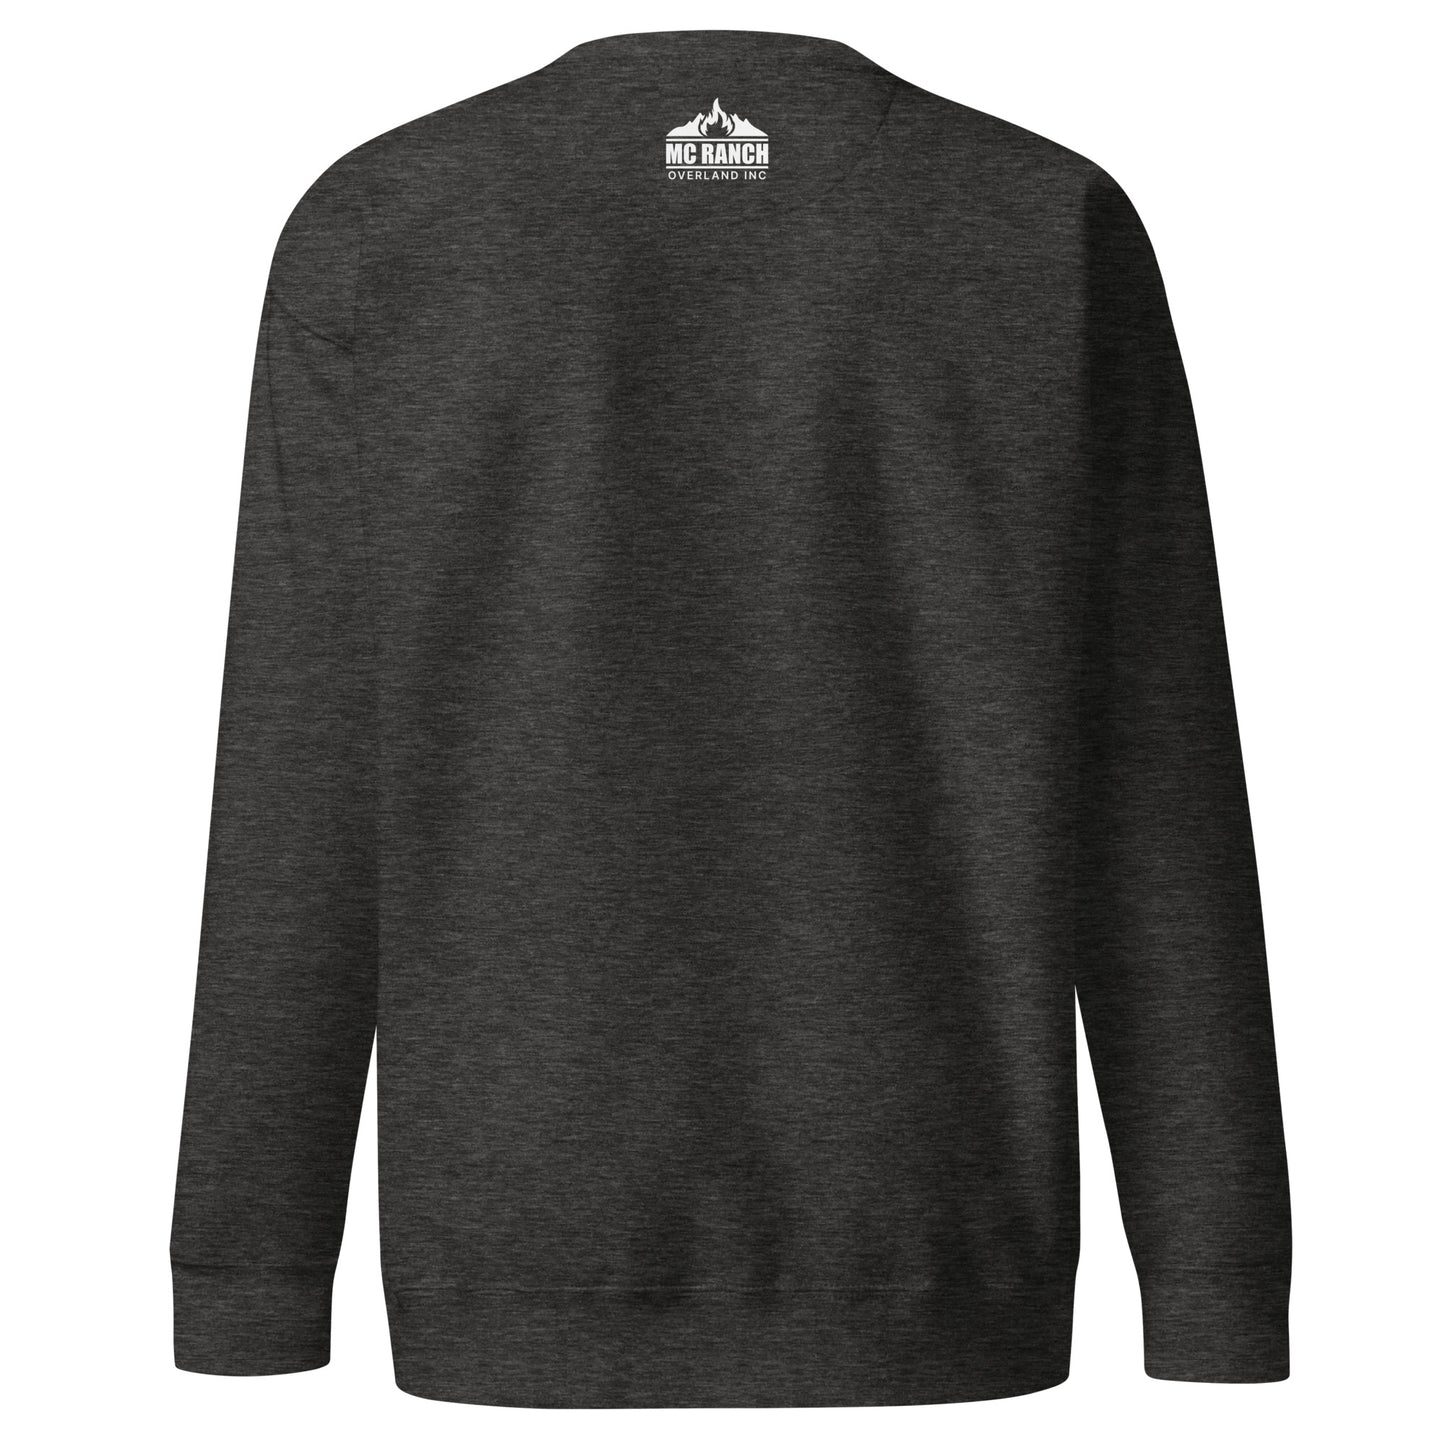 The MCRO Unisex Crewneck Sweatshirt